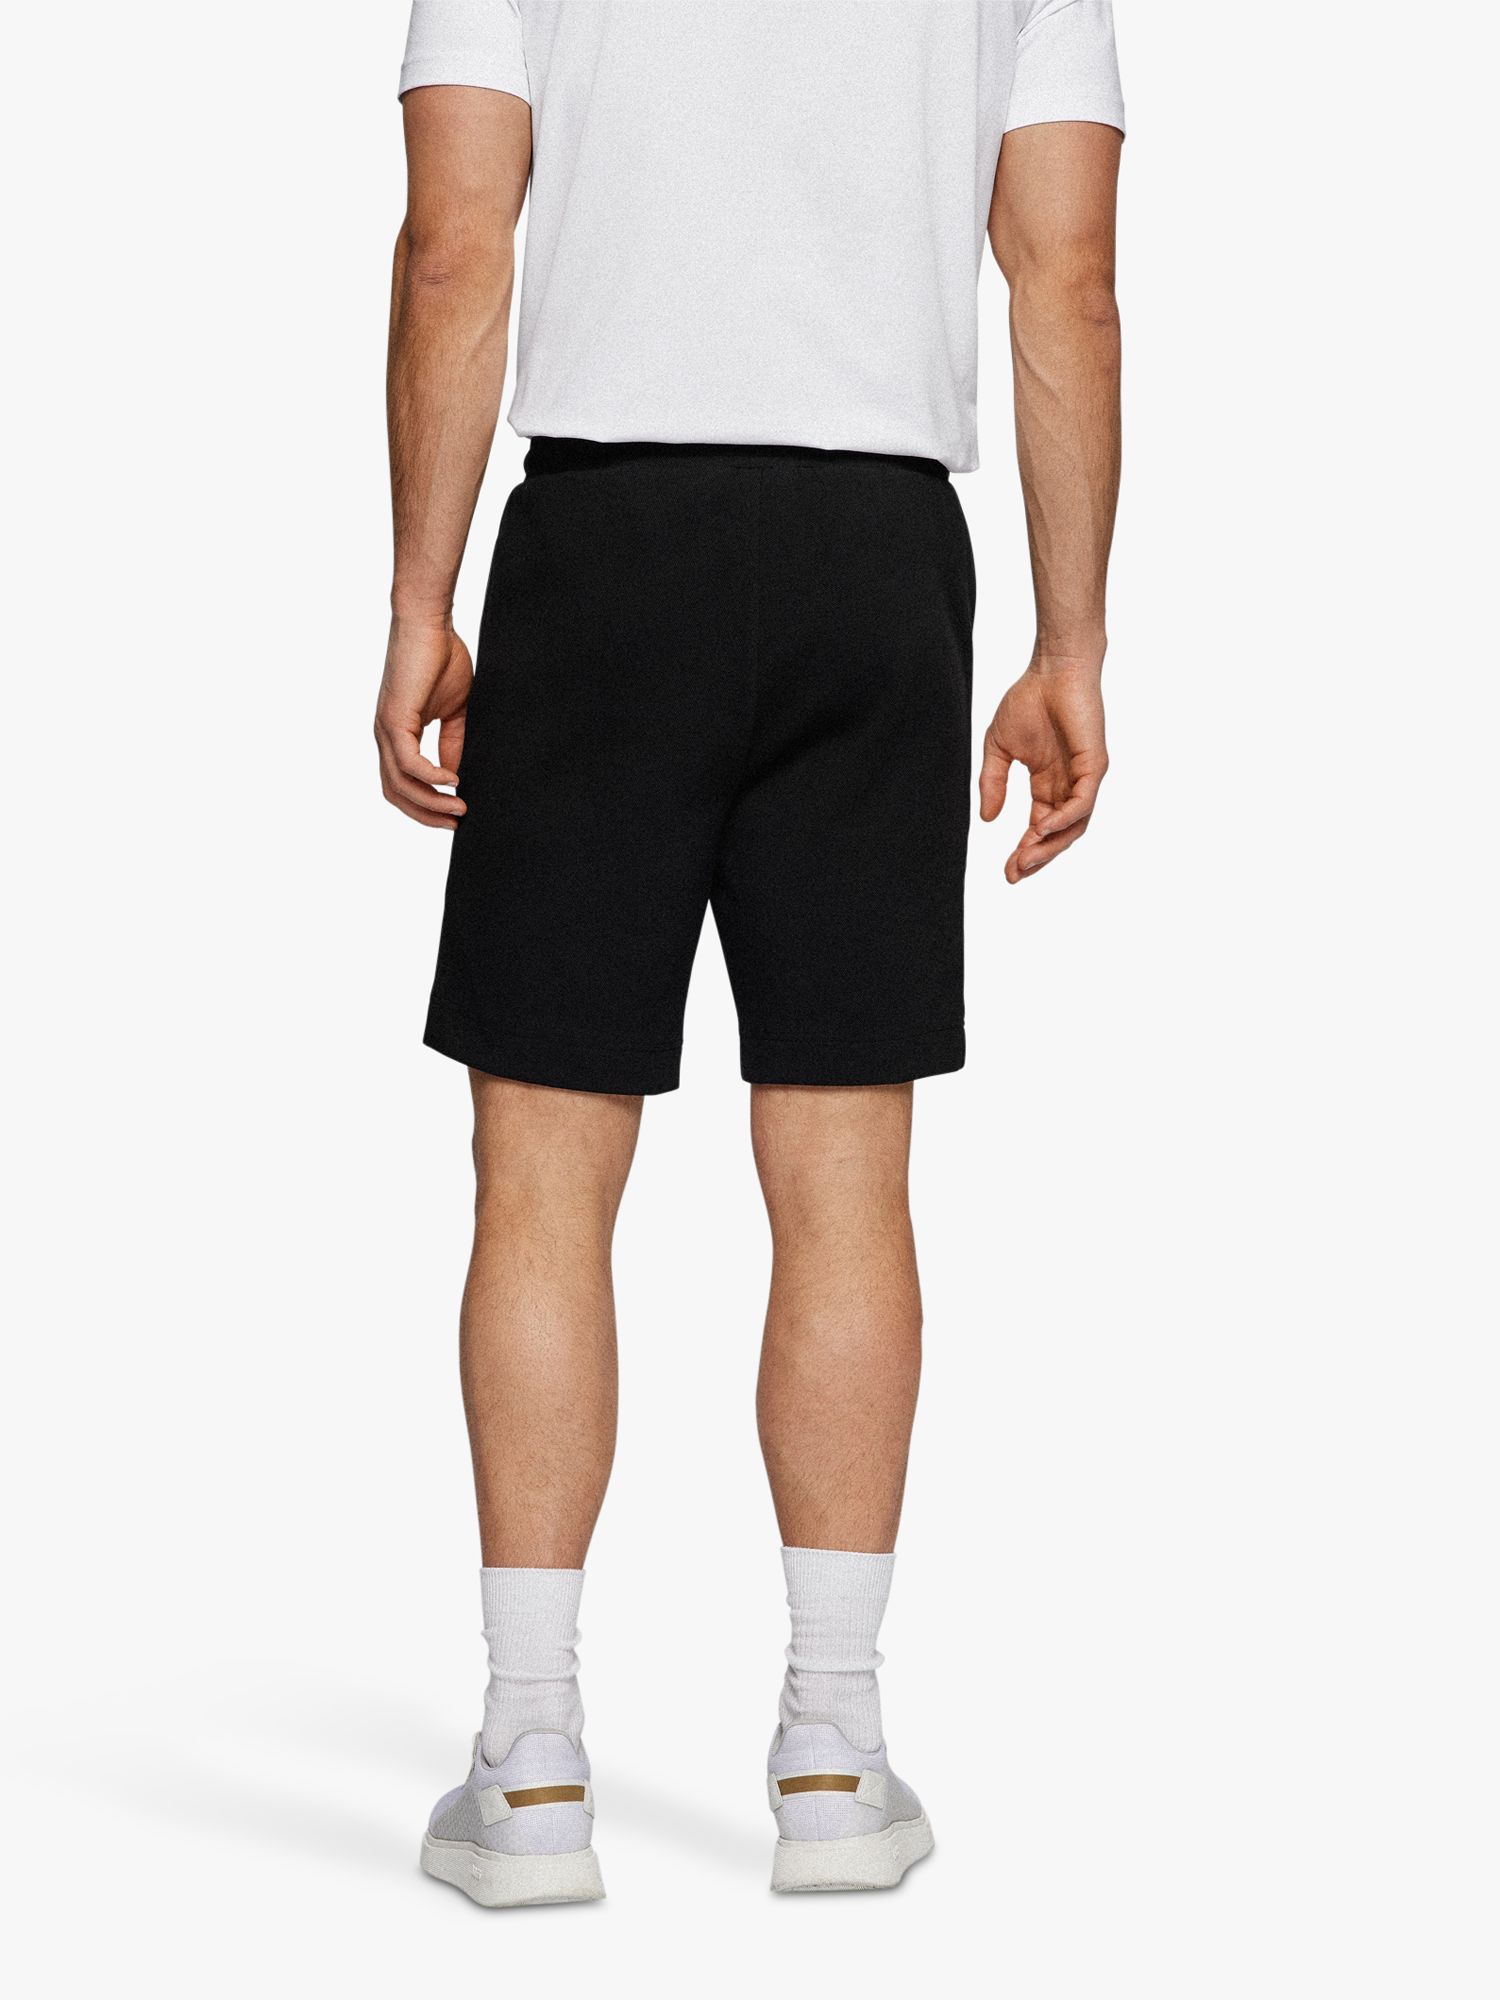 Curved Jogging Shorts - Black